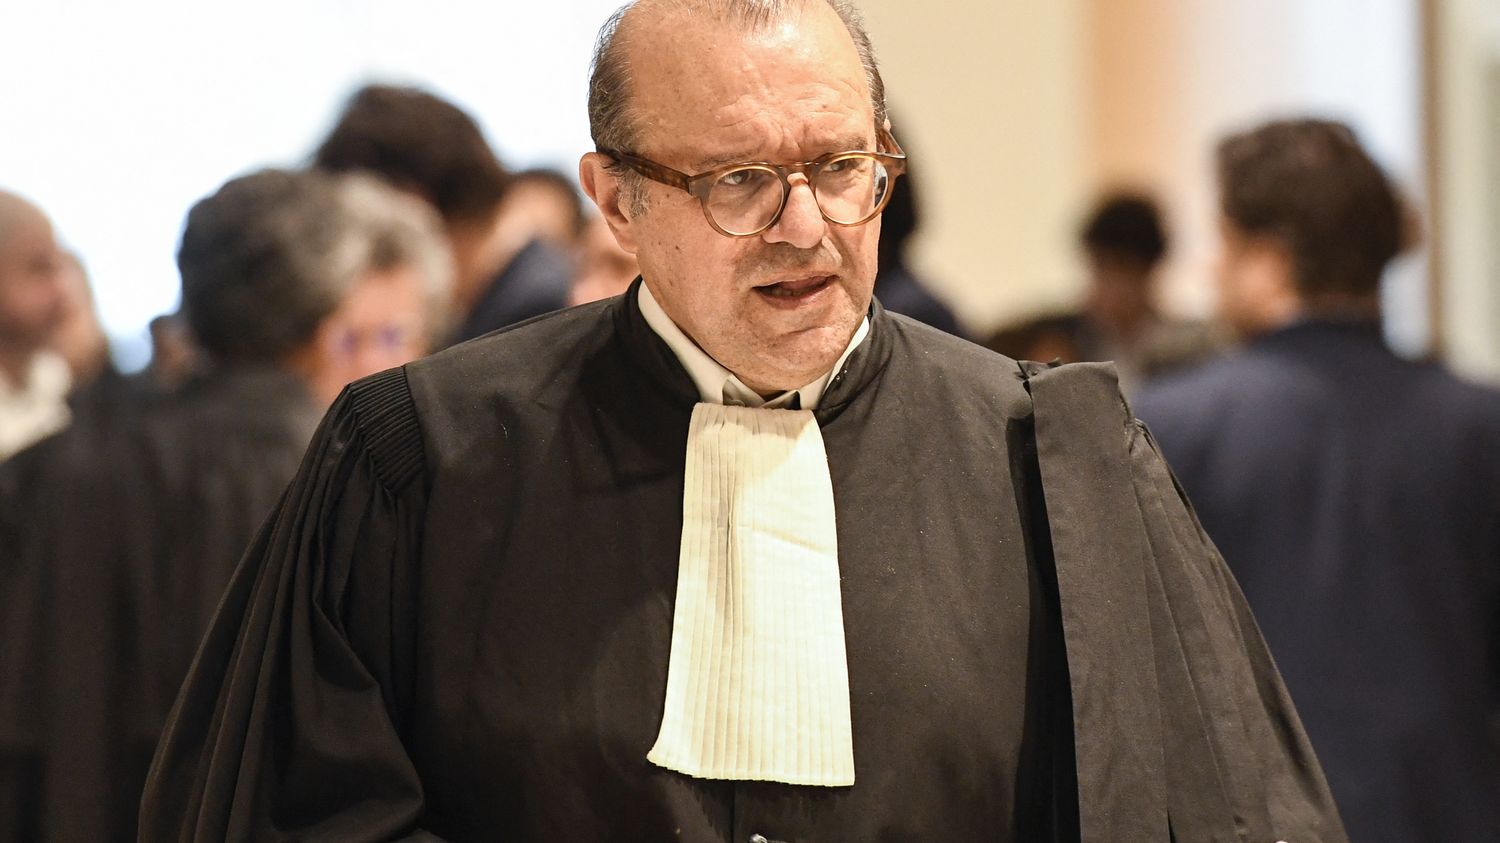 Le célèbre avocat pénaliste Hervé Temime est mort à l'âge de 65 ans, annonce le ministre de la Justice